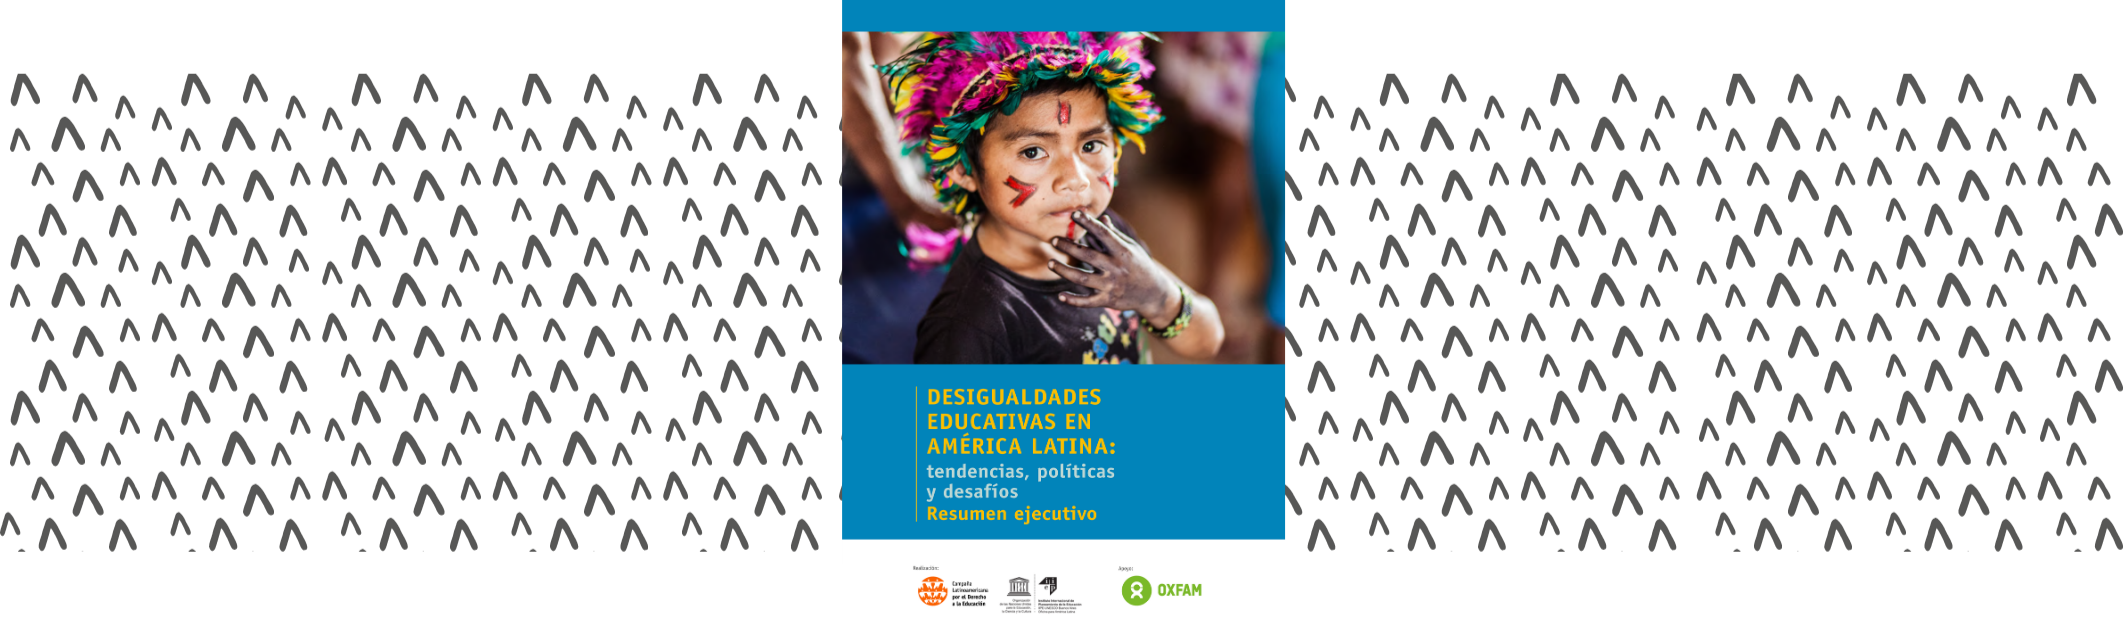 Desigualdades educativas en América Latina: tendencias, políticas y desafíos - Resumen ejecutivo